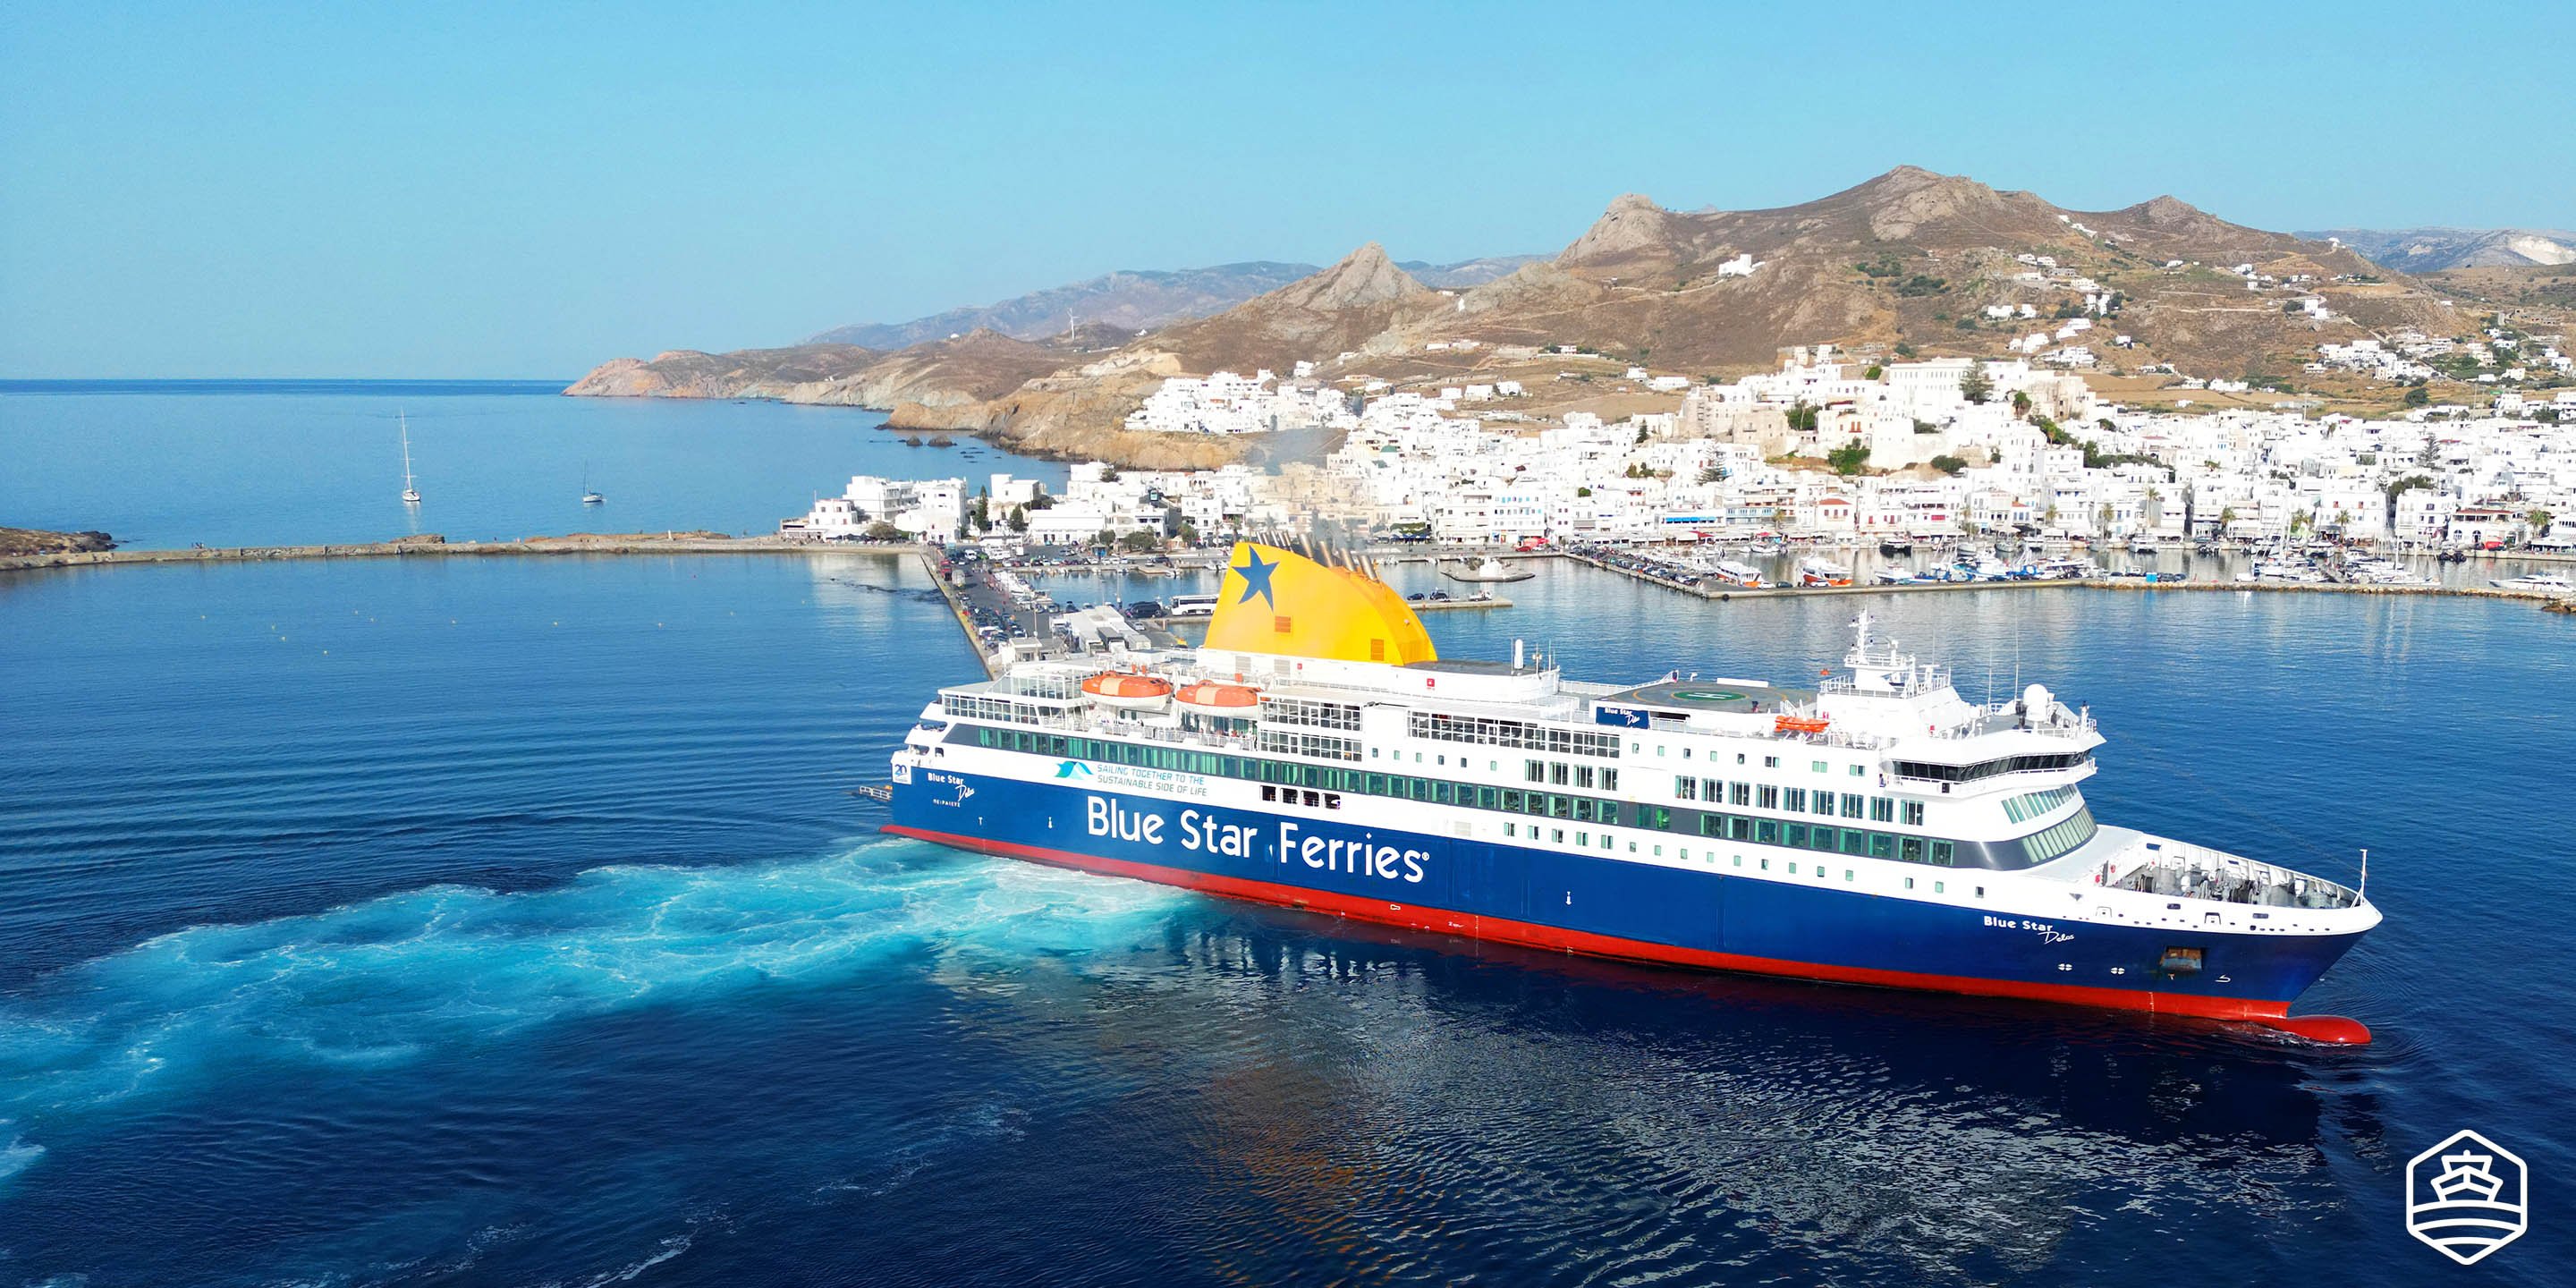 Le ferry conventionnel Blue Star Delos arrive à Naxos depuis les ports d'Athènes et de Paros